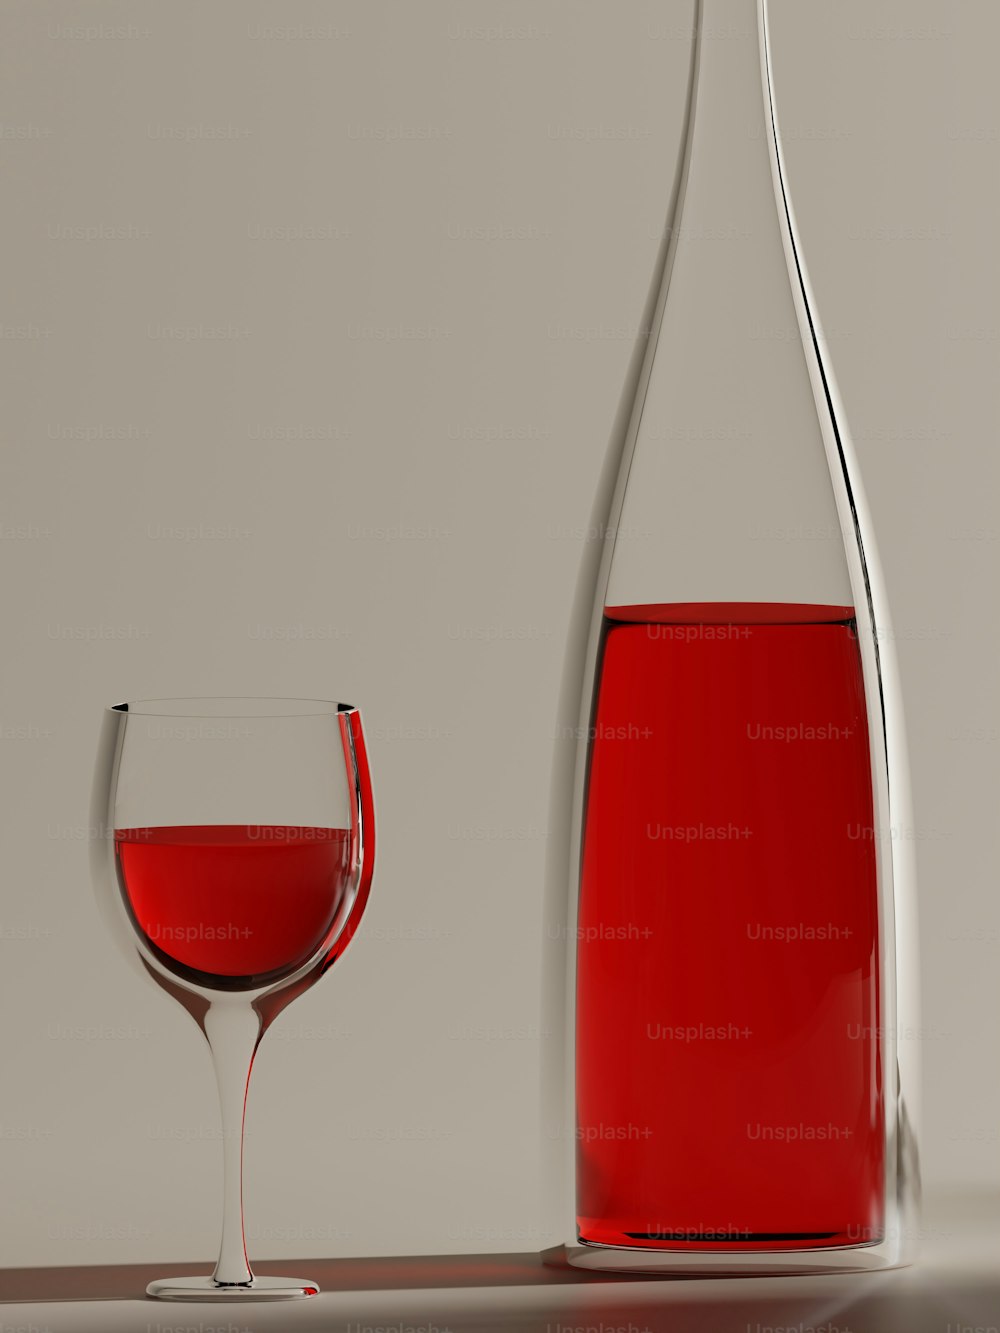 um copo de vinho tinto ao lado de uma garrafa de vinho